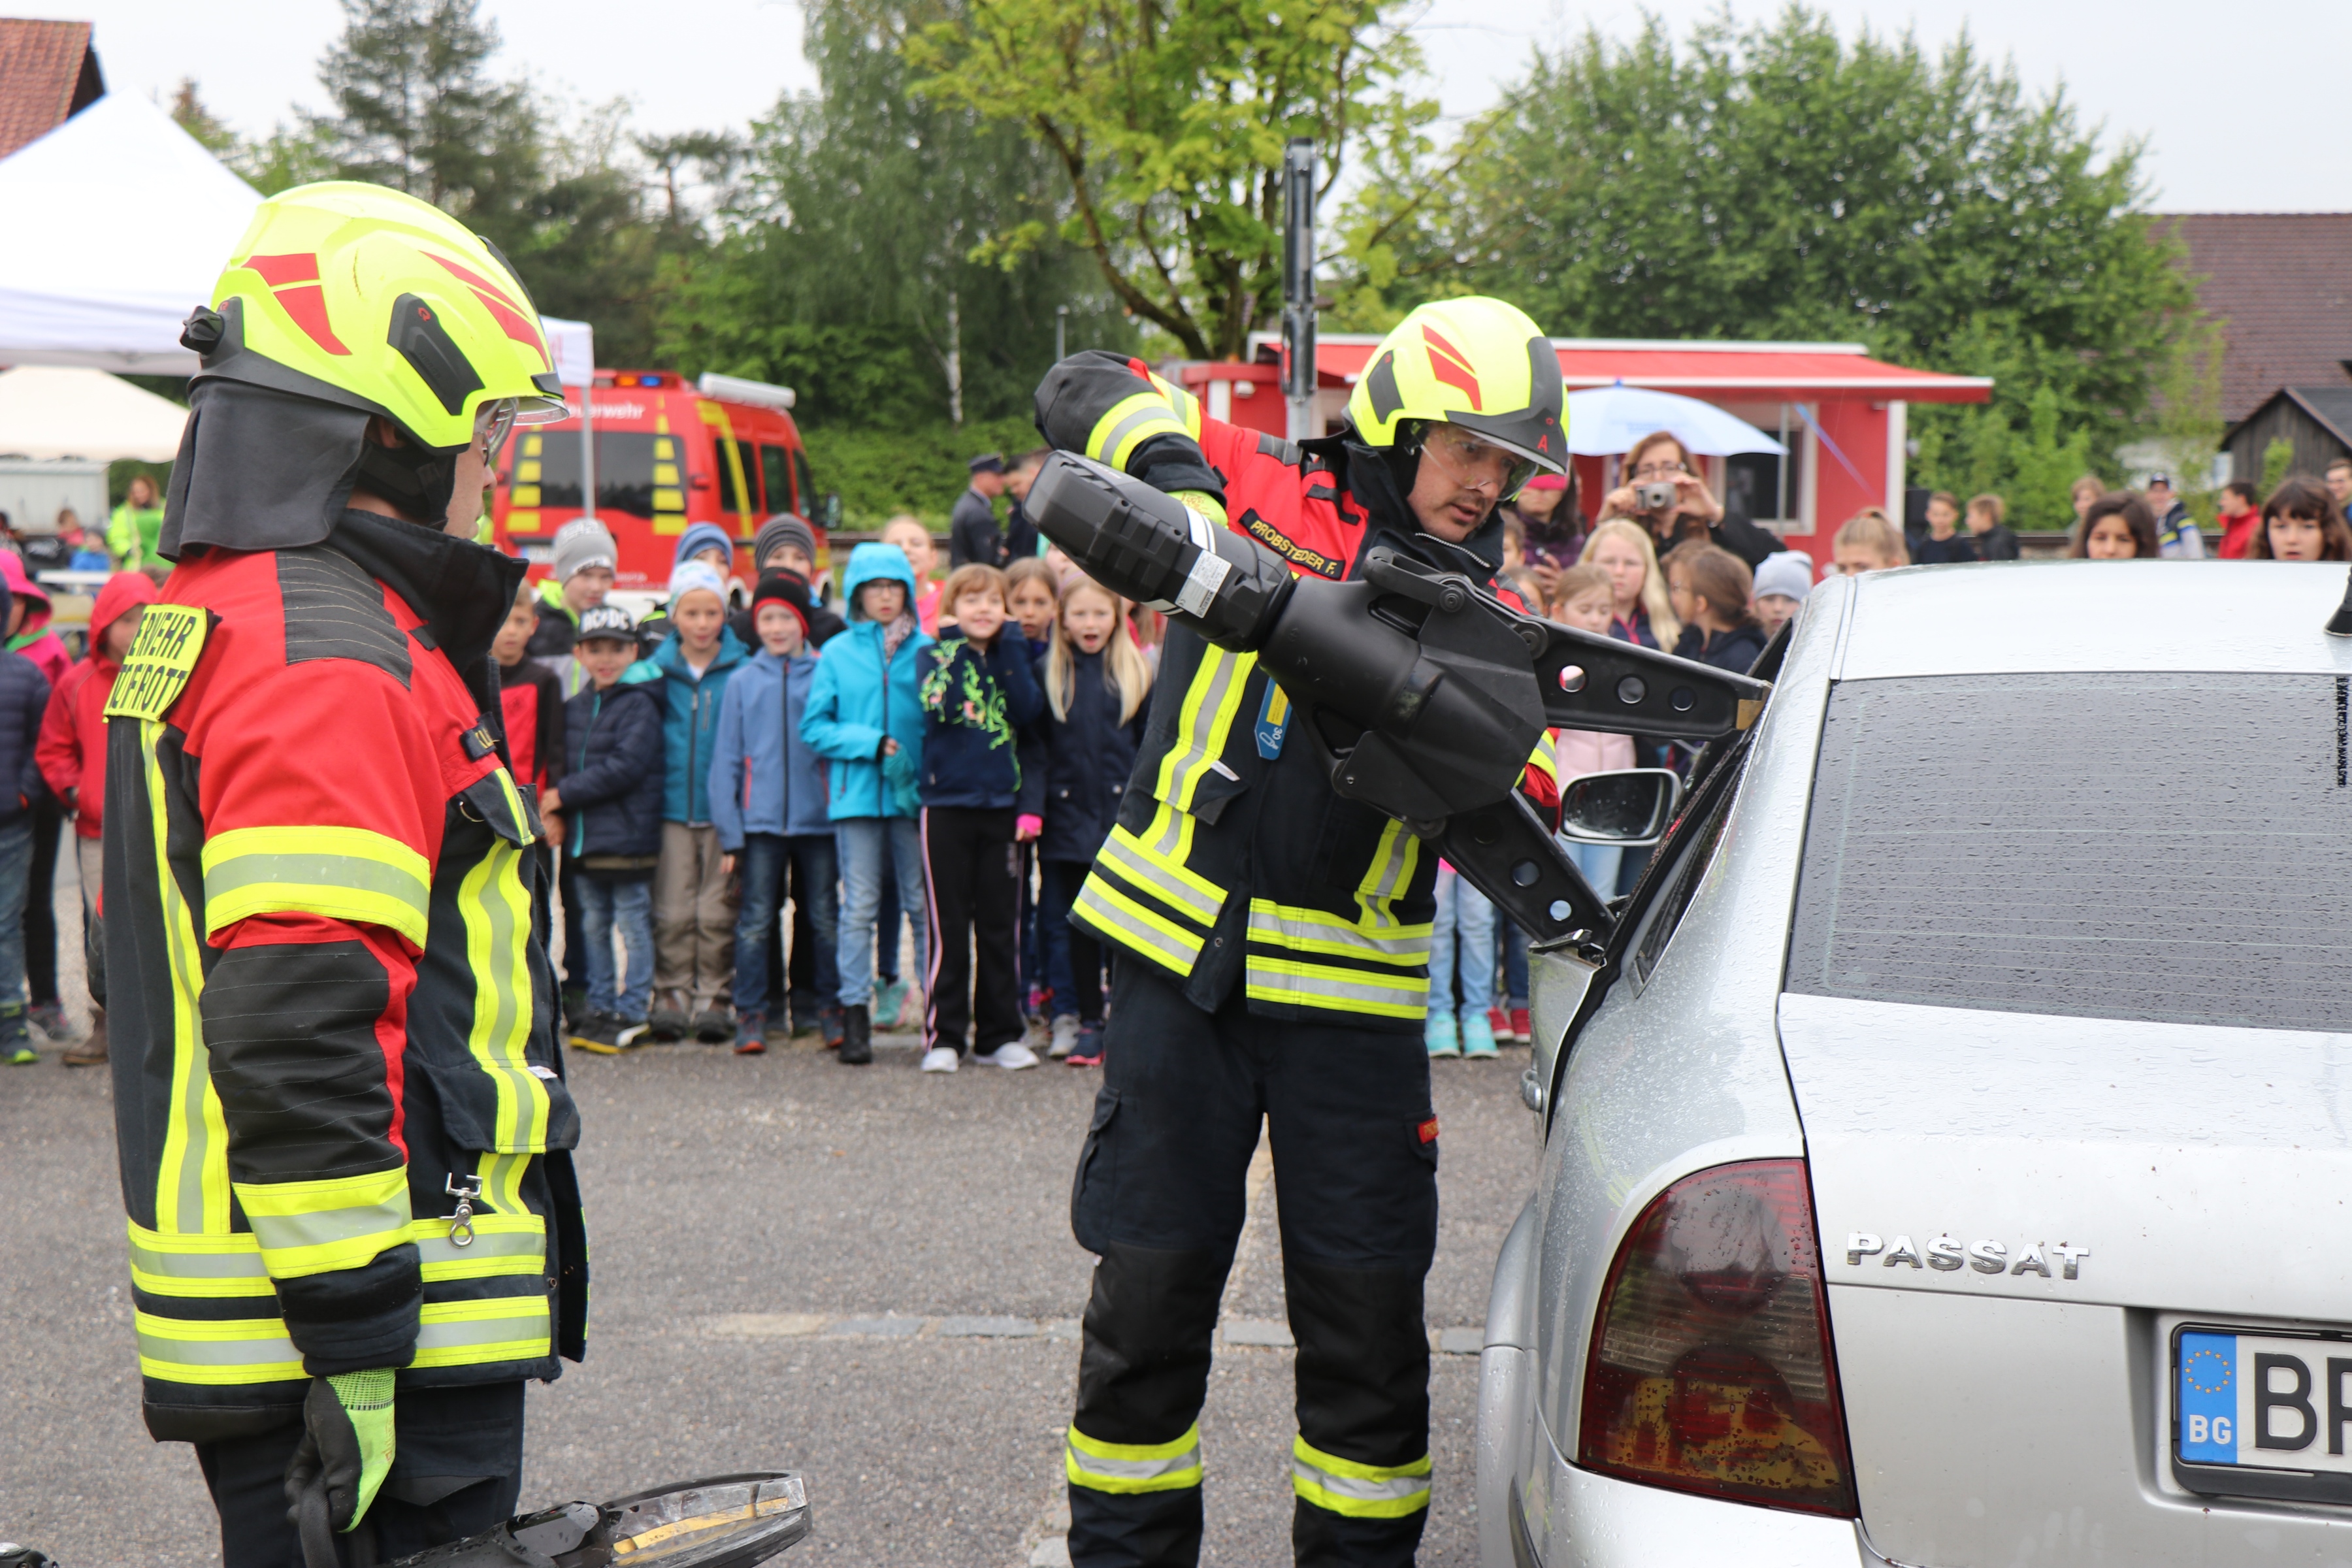 Feuerwehr in Aktion: Kinder und Jugendliche staunen über die schnelle Öffnung eines Autos mit dem Rettungsspreitzer.